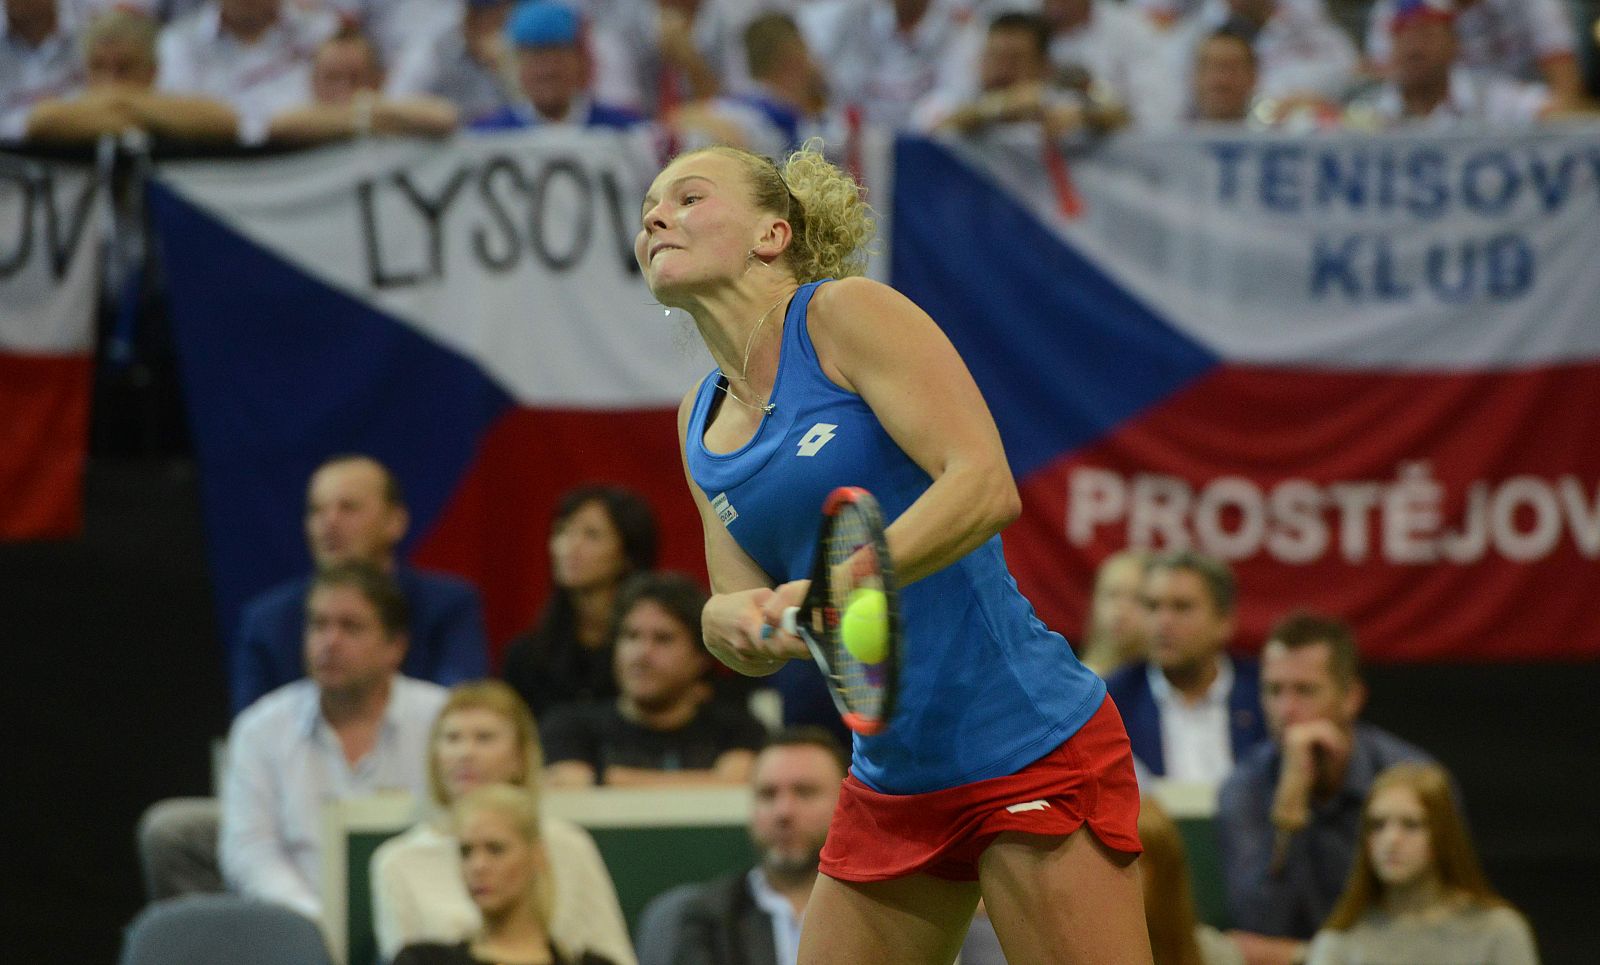 La checa Katrina Siniakova devuelve una bola en la final de la Copa Federación